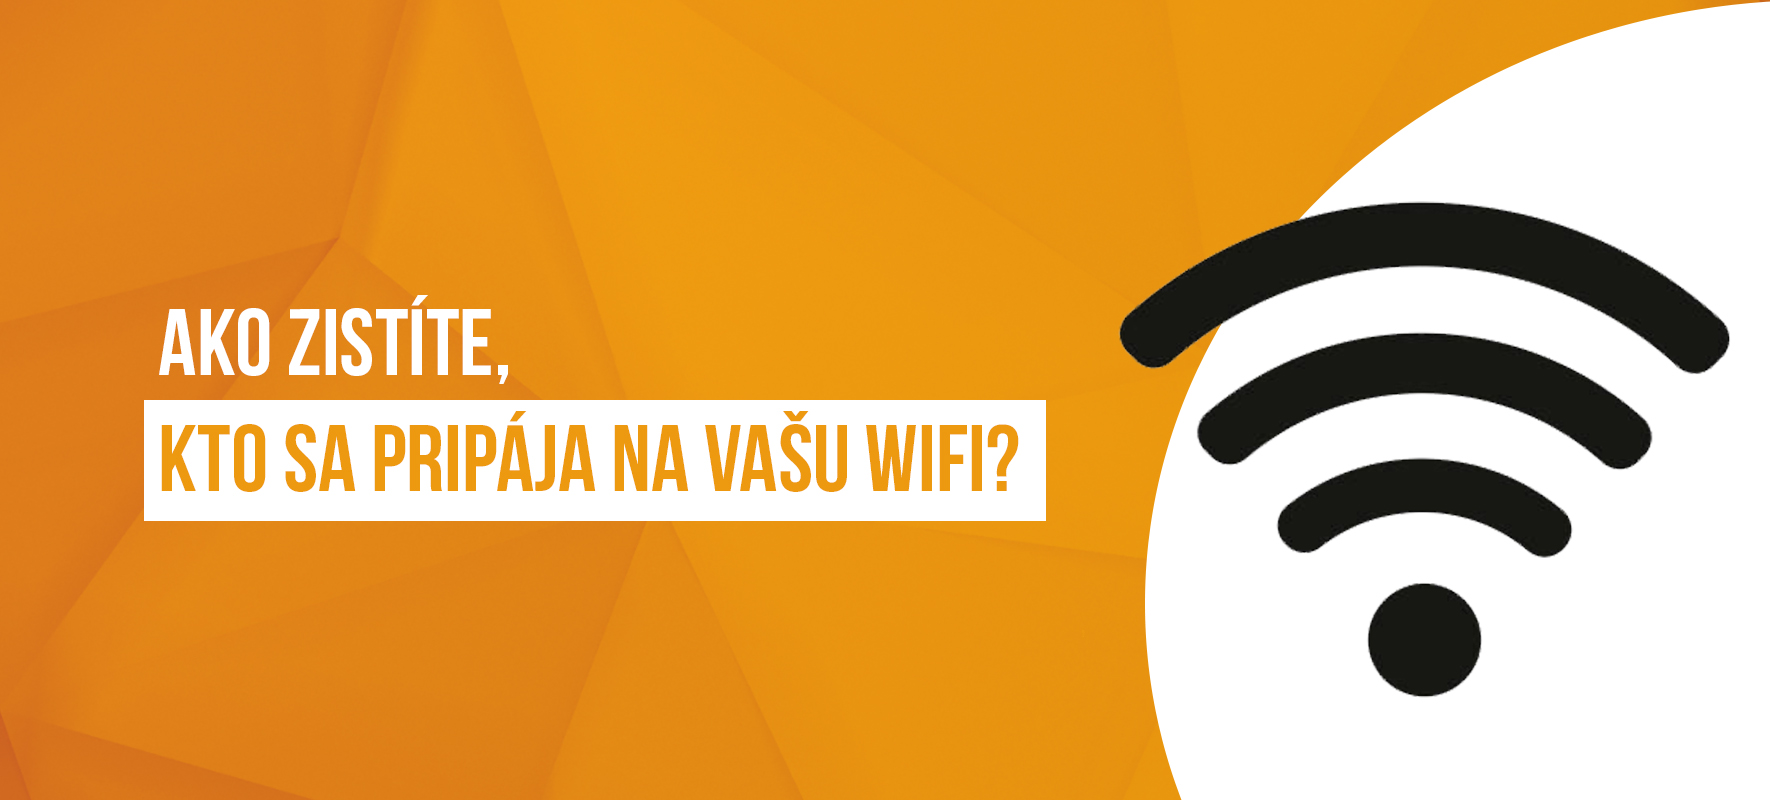 Ako zistíte, kto sa pripája na vašu Wi-Fi?